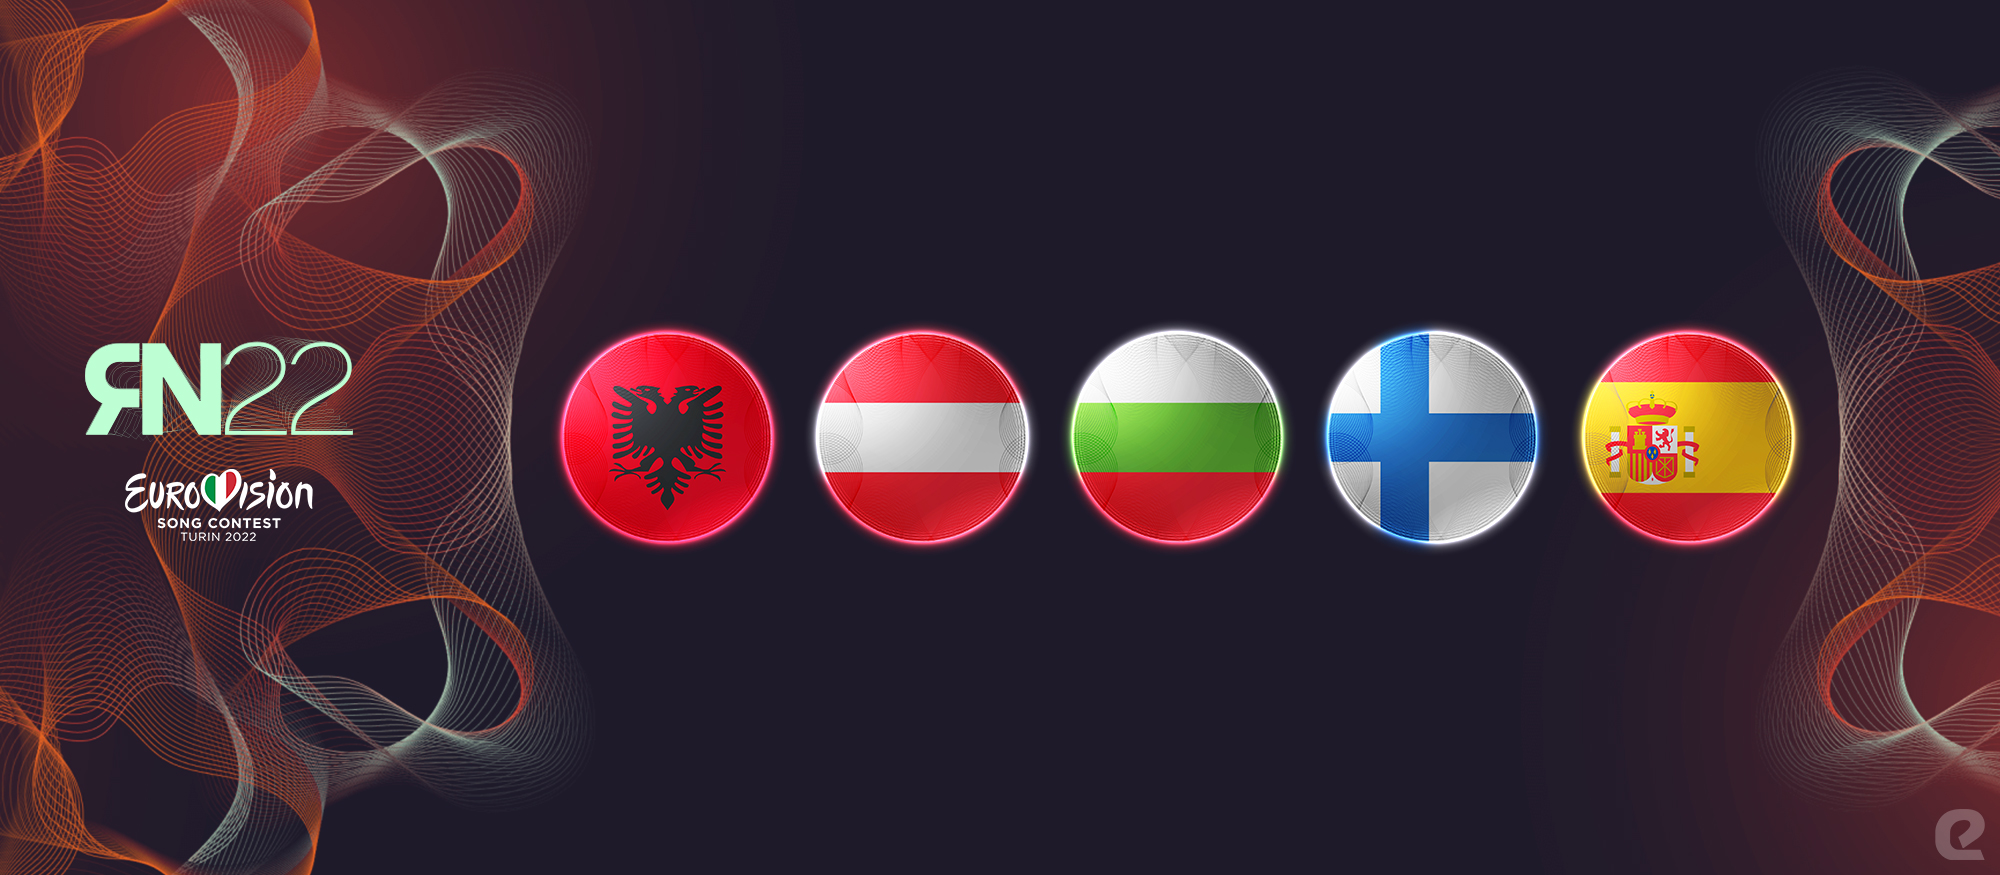 Razmišljamo naglas Eurosong 2022. eurosong.hr Albanija Austrija Bugarska Finska Španjolska